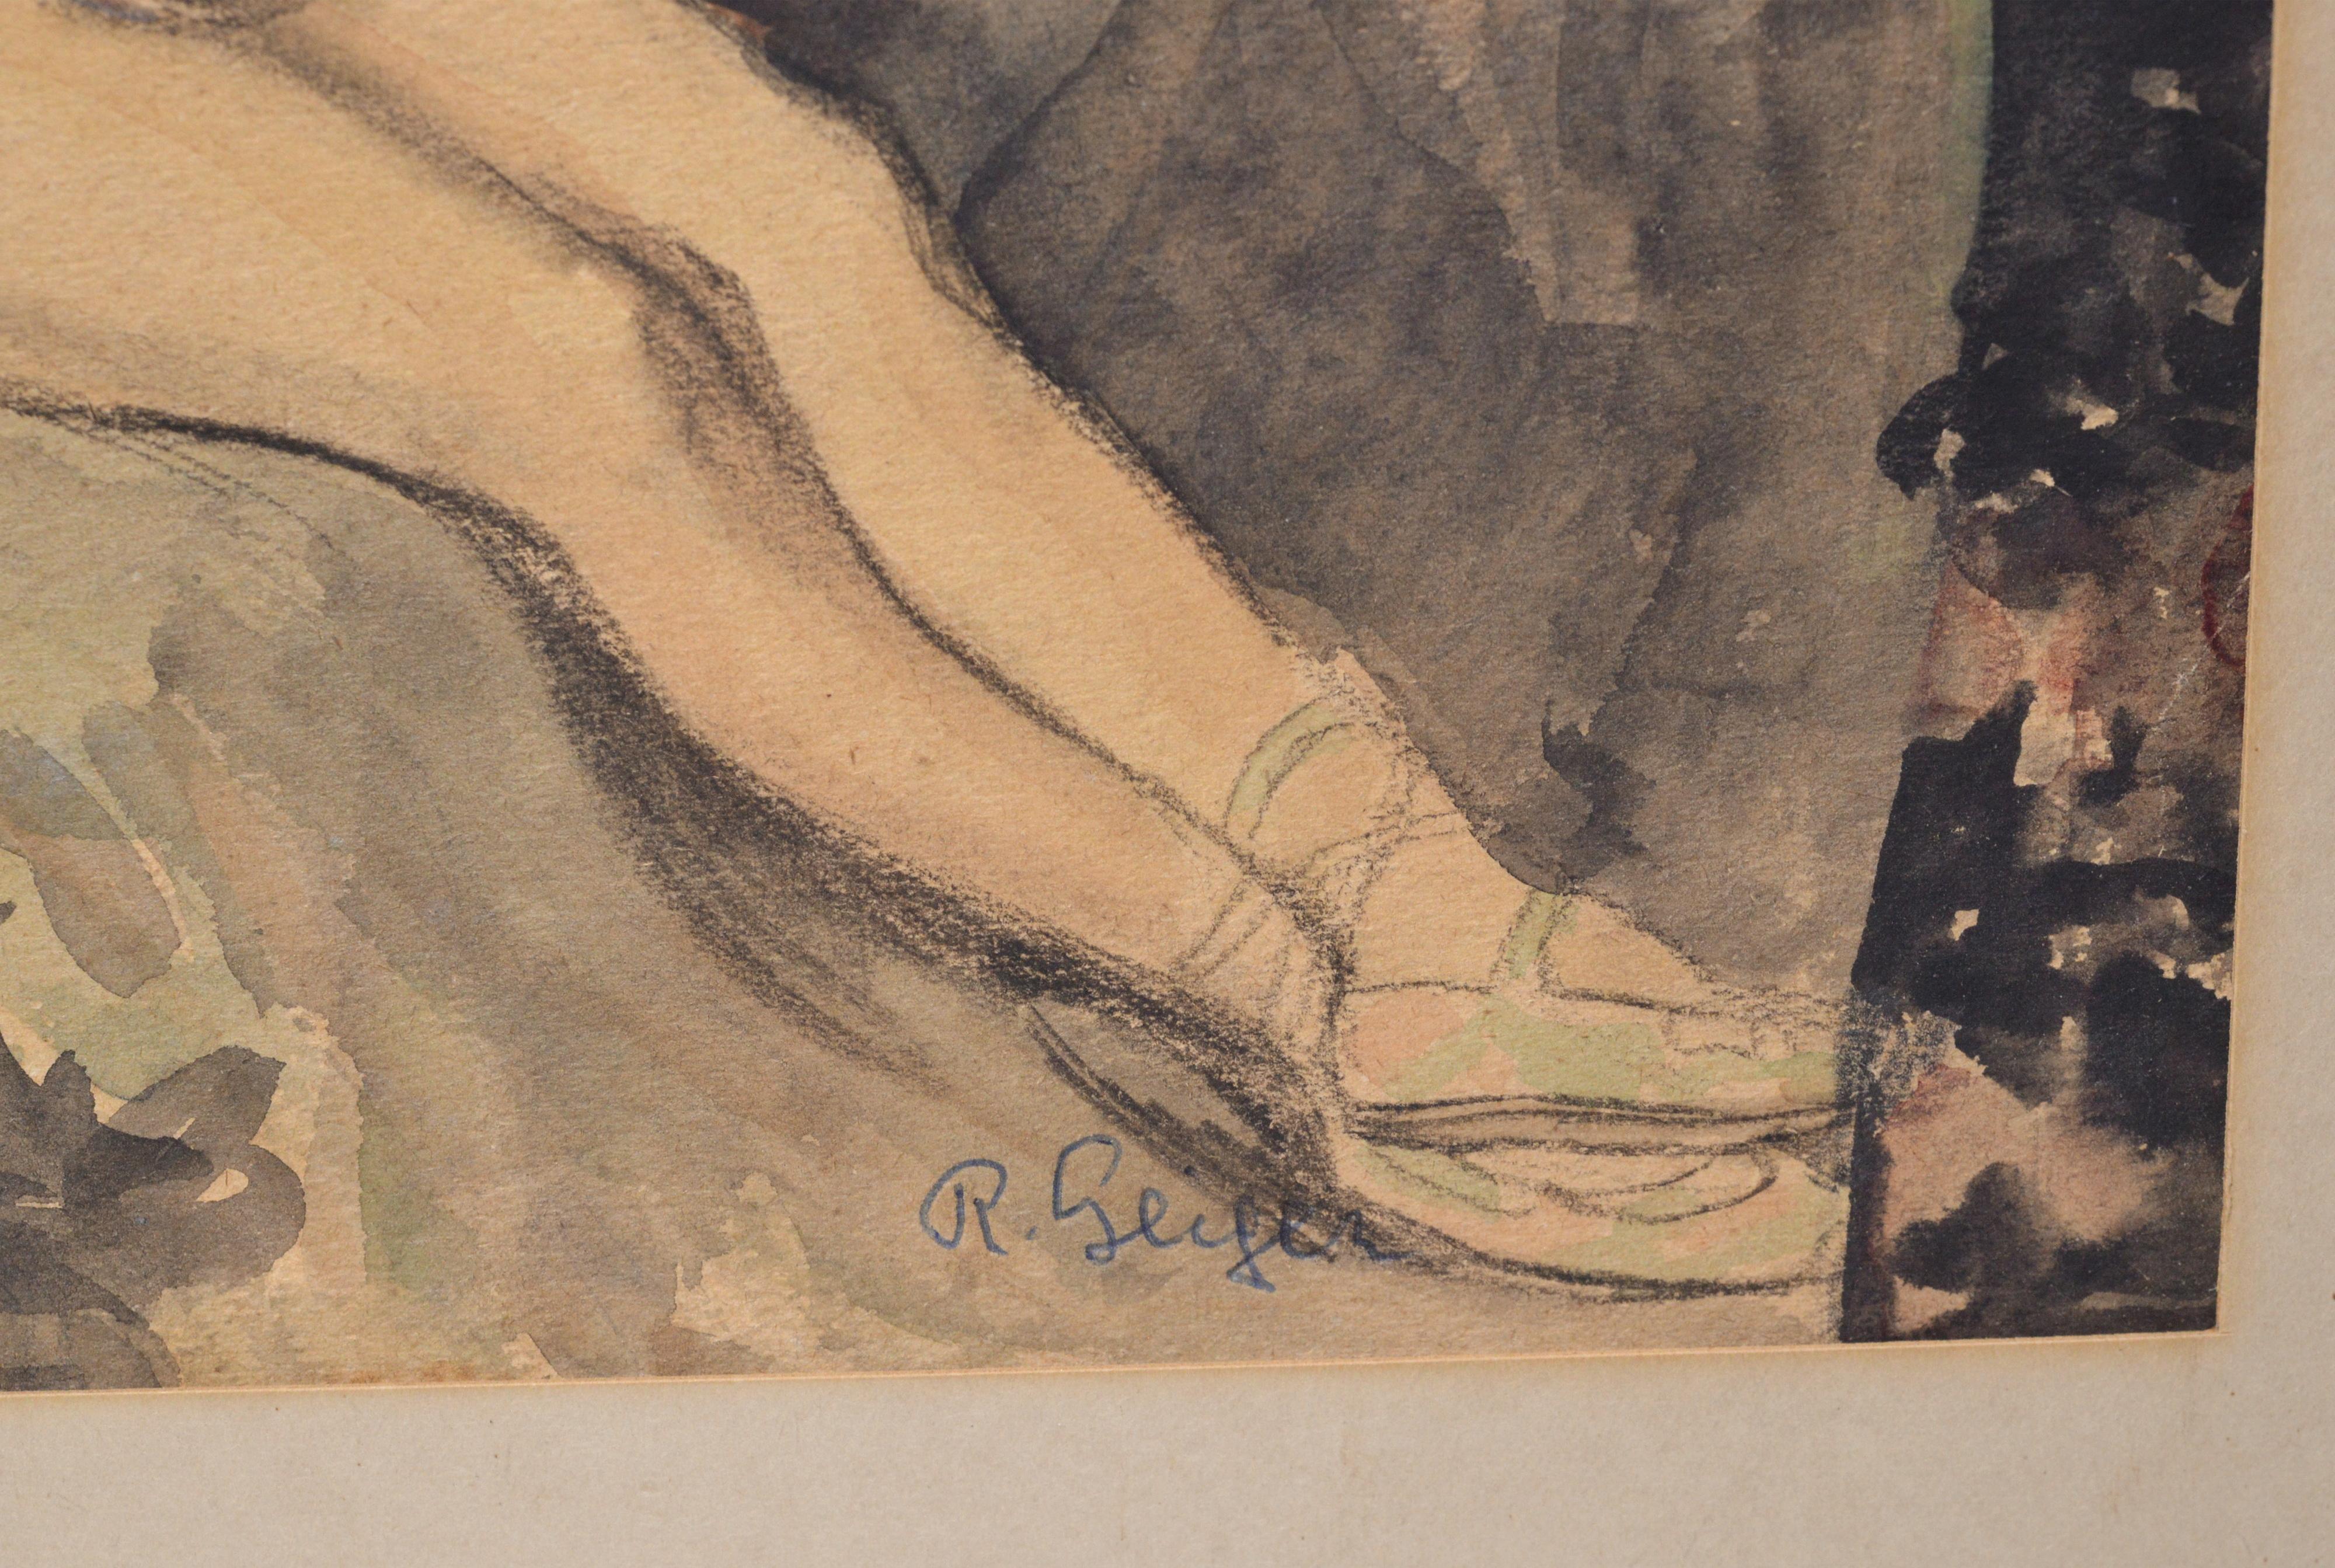 Signiert: von Richard Geiger (1870 - 1945), österreichisch-ungarischer Maler. Auch Bleistiftaufschriften auf der Rückseite mit Datum 33 (1933). In den 1920er Jahren arbeitete er als Illustrator von Büchern, Exlibris und Plakaten. Zu seinen Gemälden